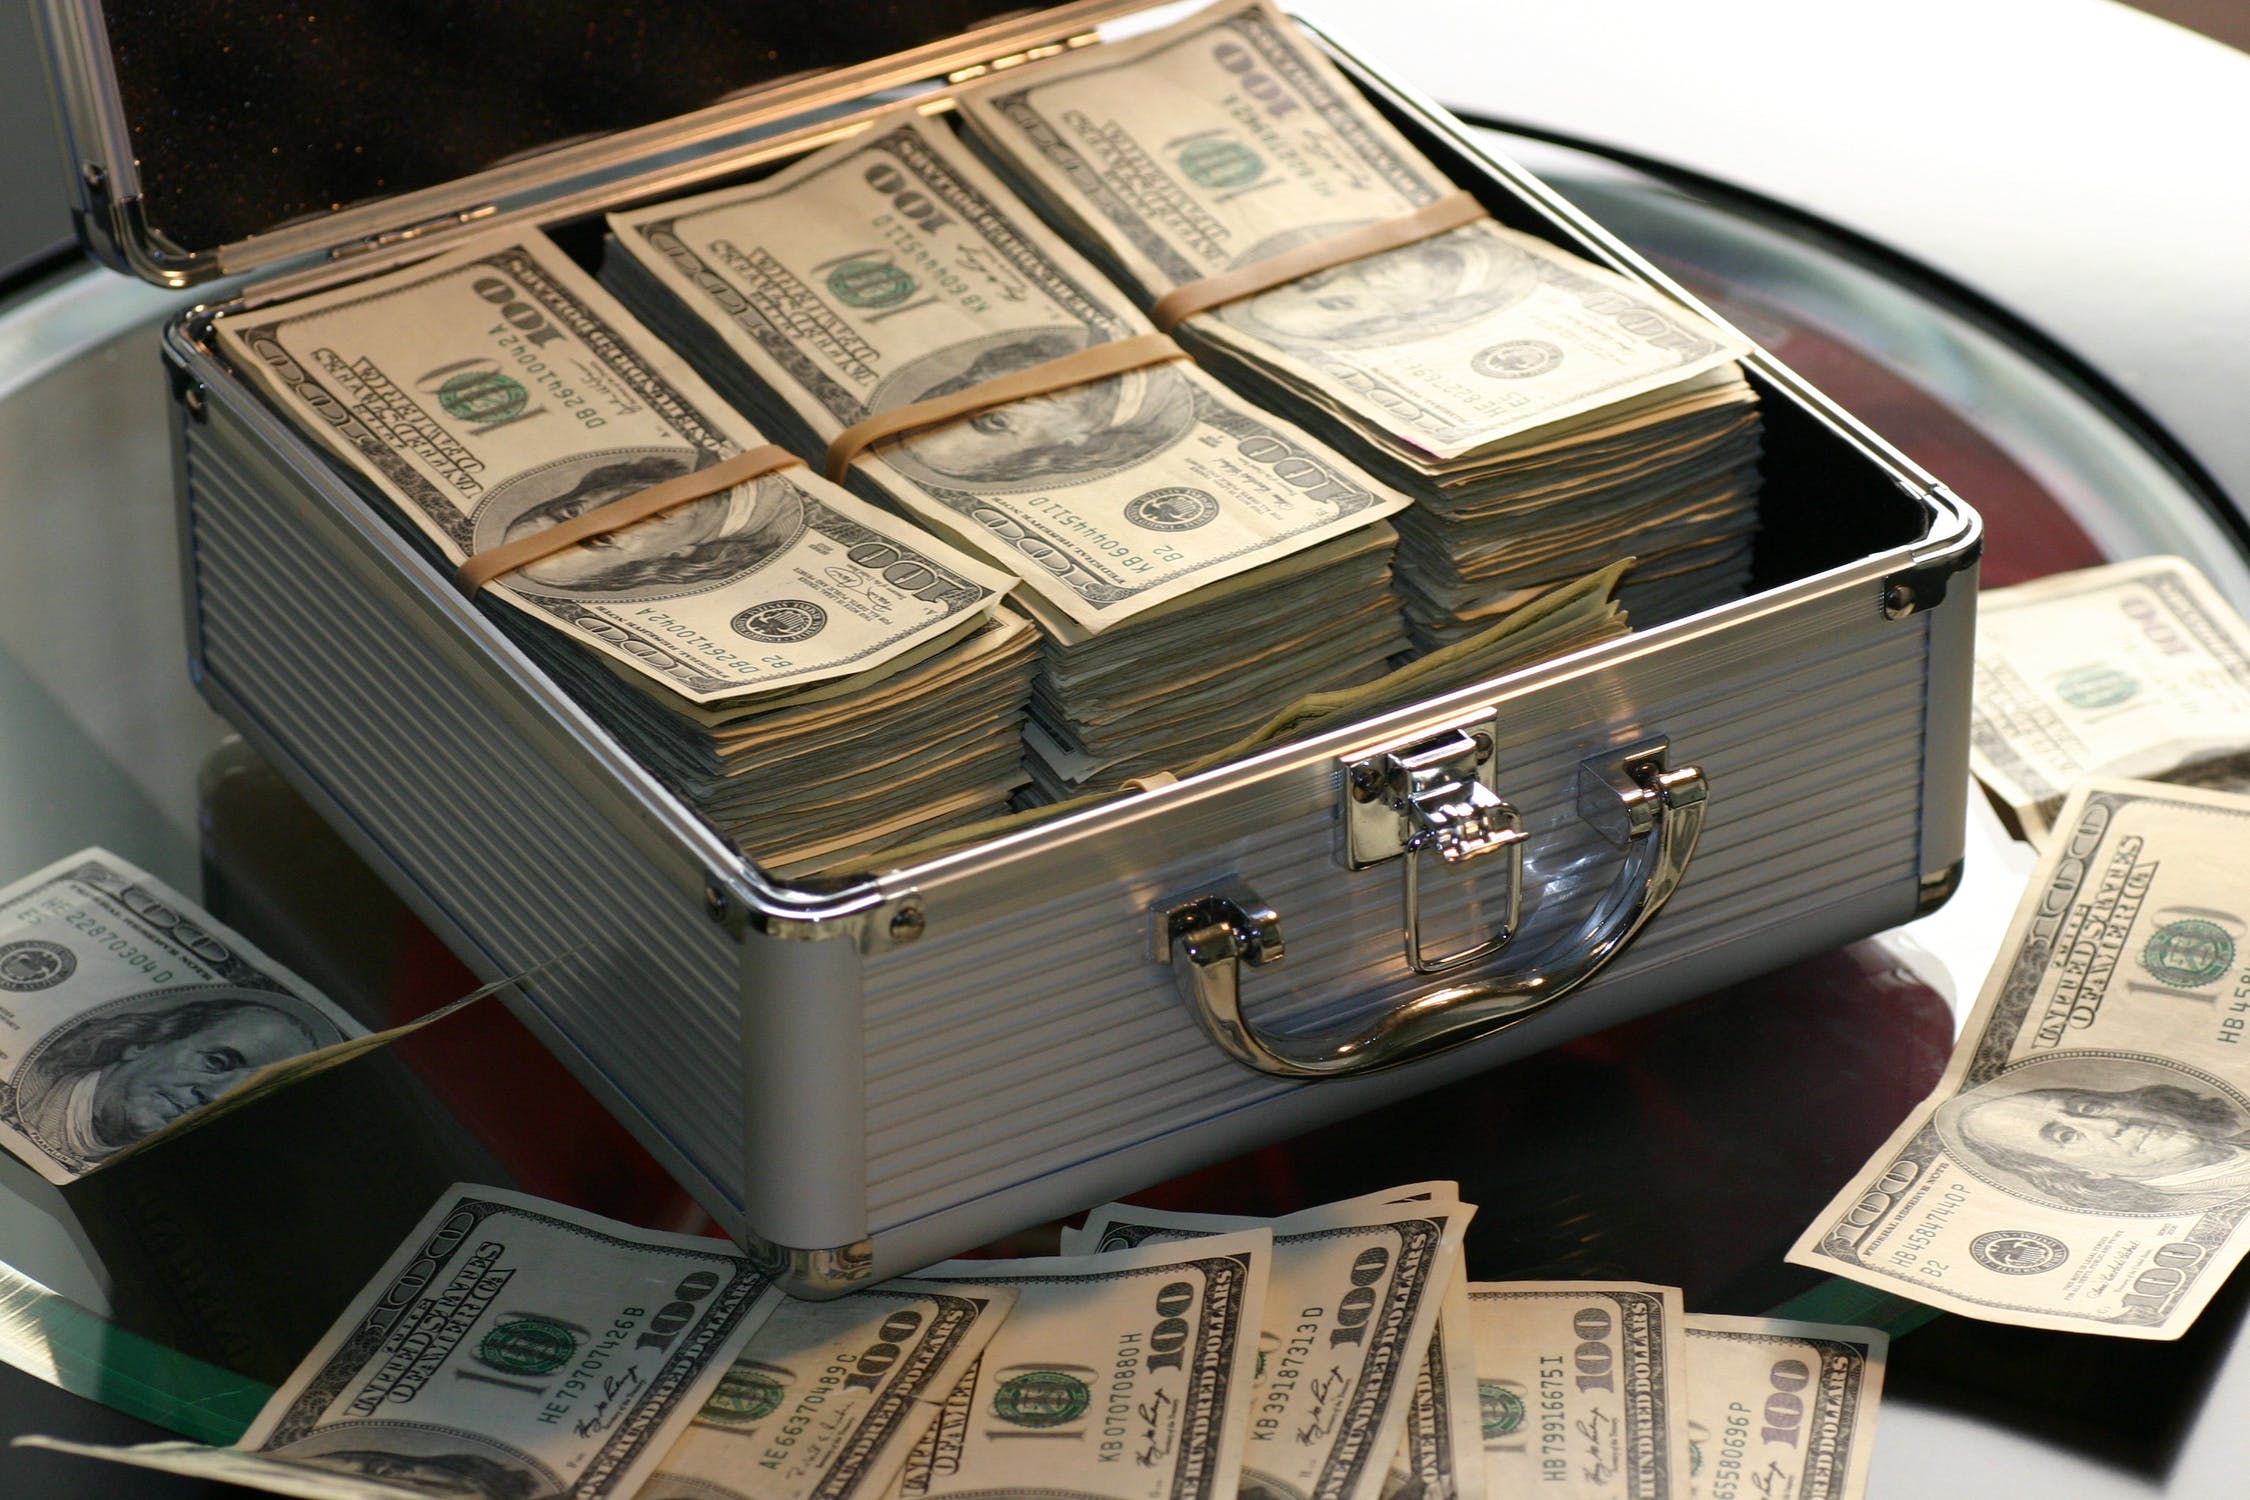 Dans le coffre, Gina a trouvé de l'argent et les actes de propriété de la maison | Source : Unsplash